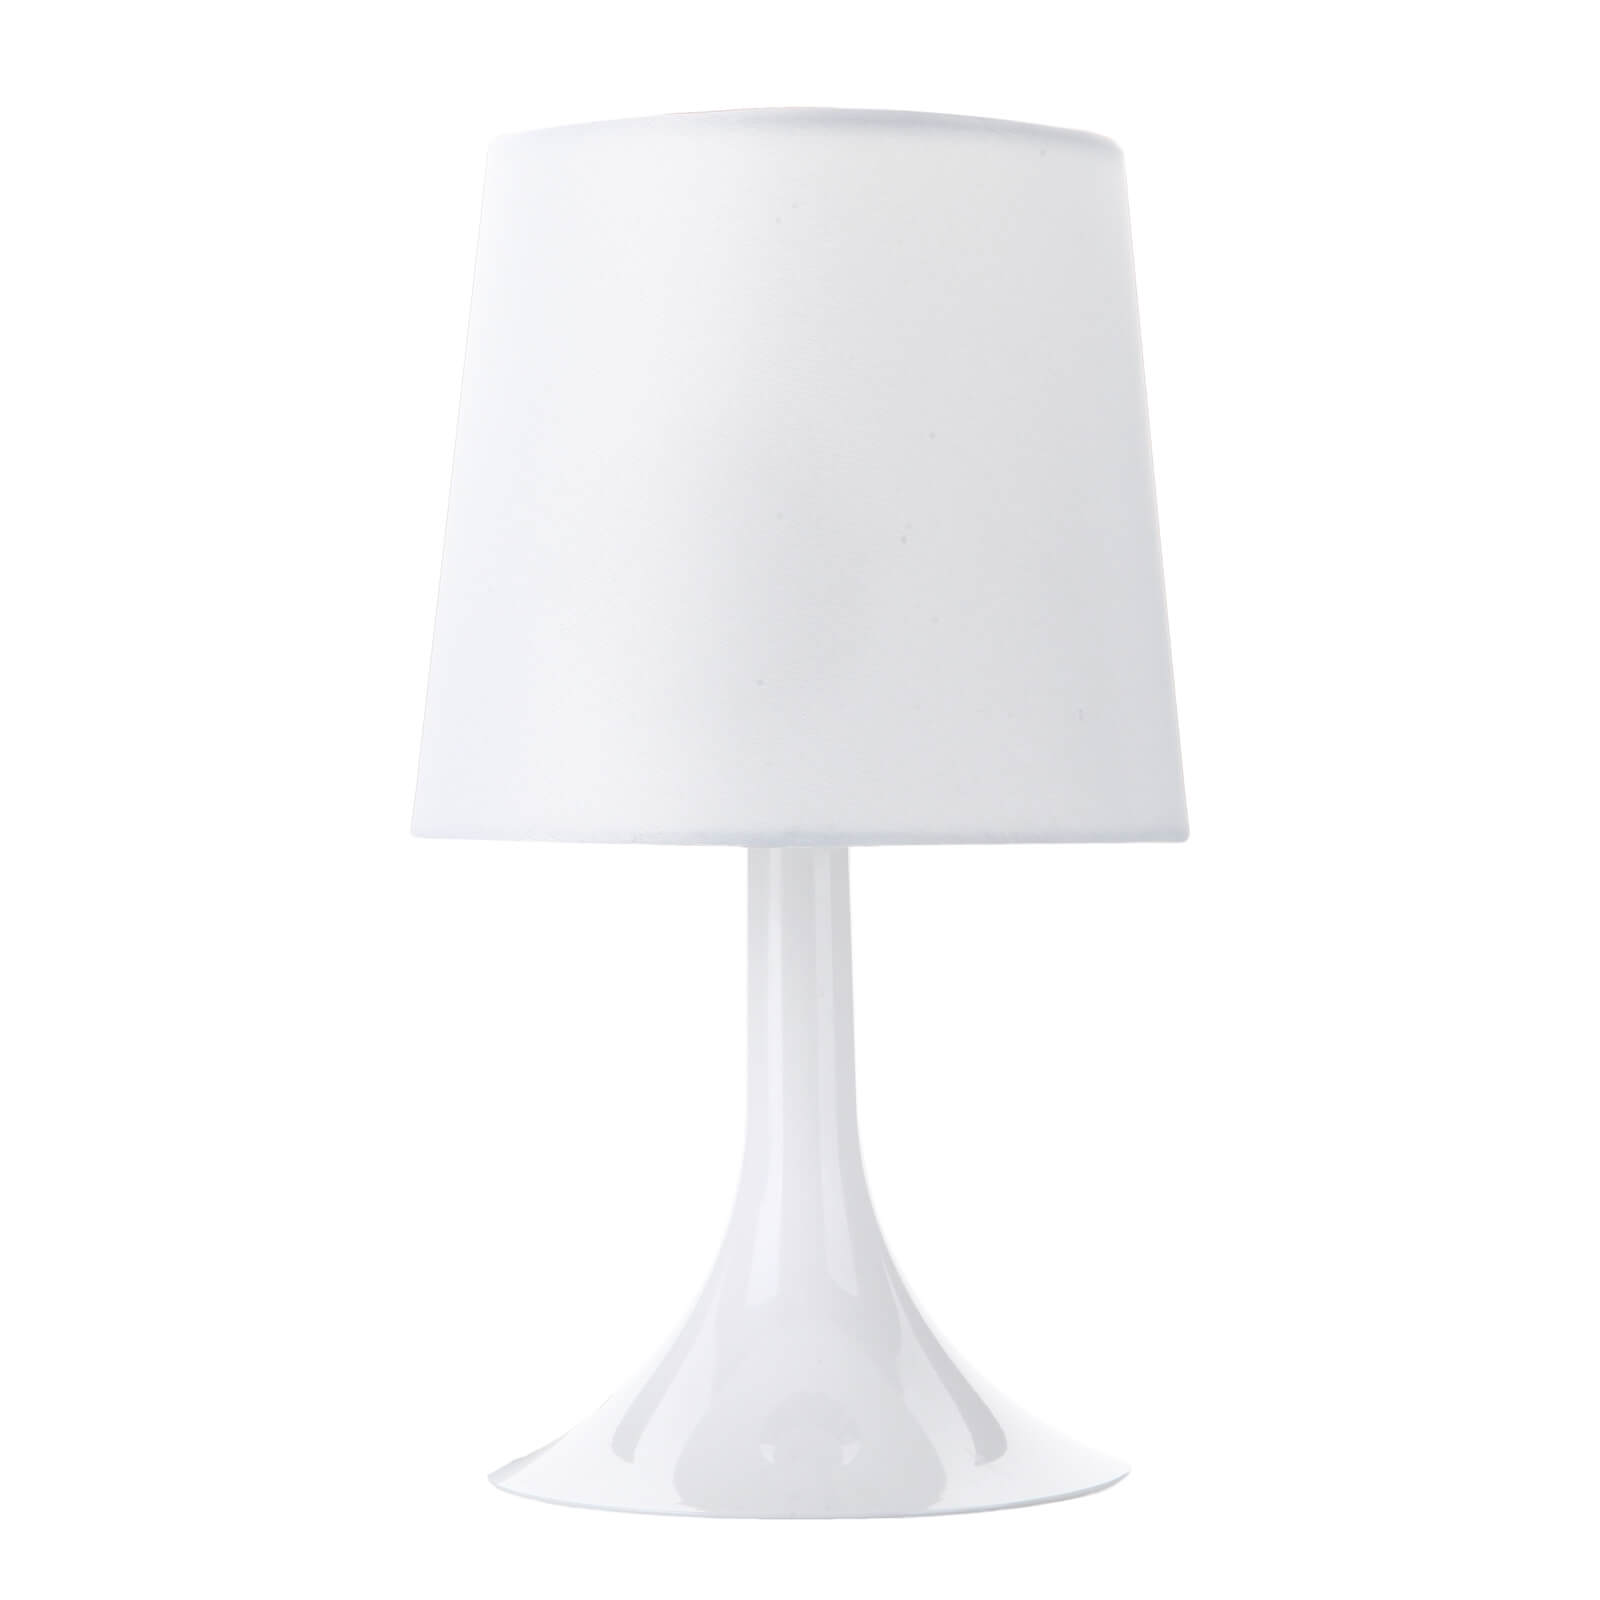 Plastic Lamp - White